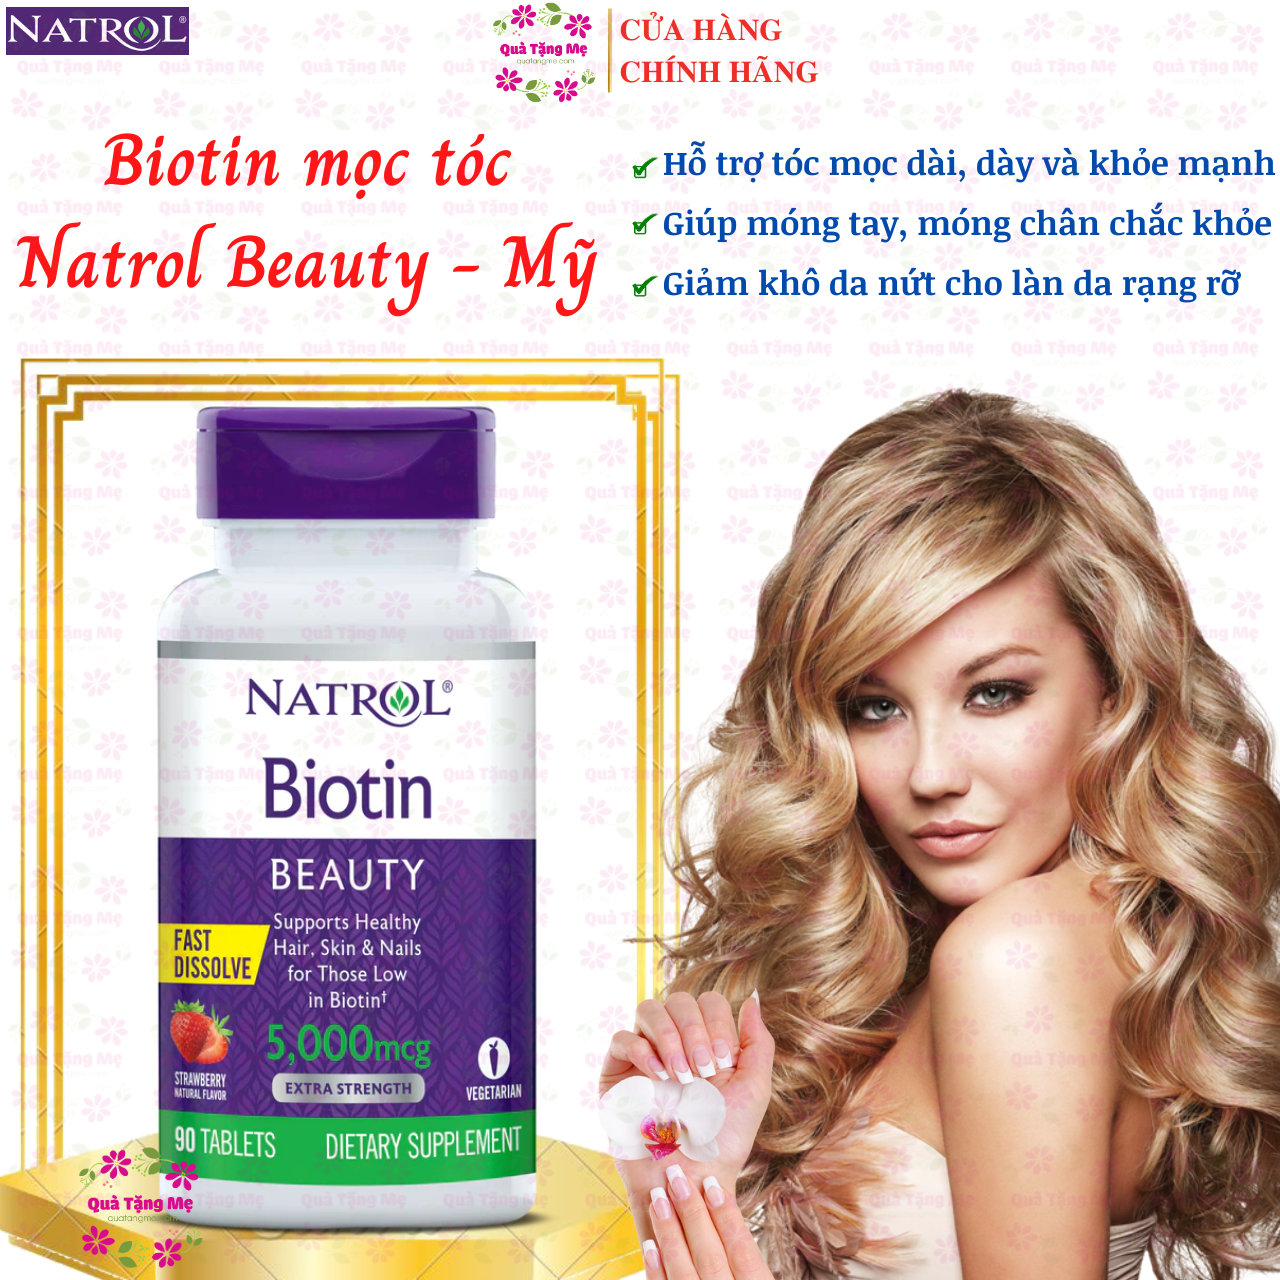 Biotin mọc tóc Natrol Beauty Mỹ